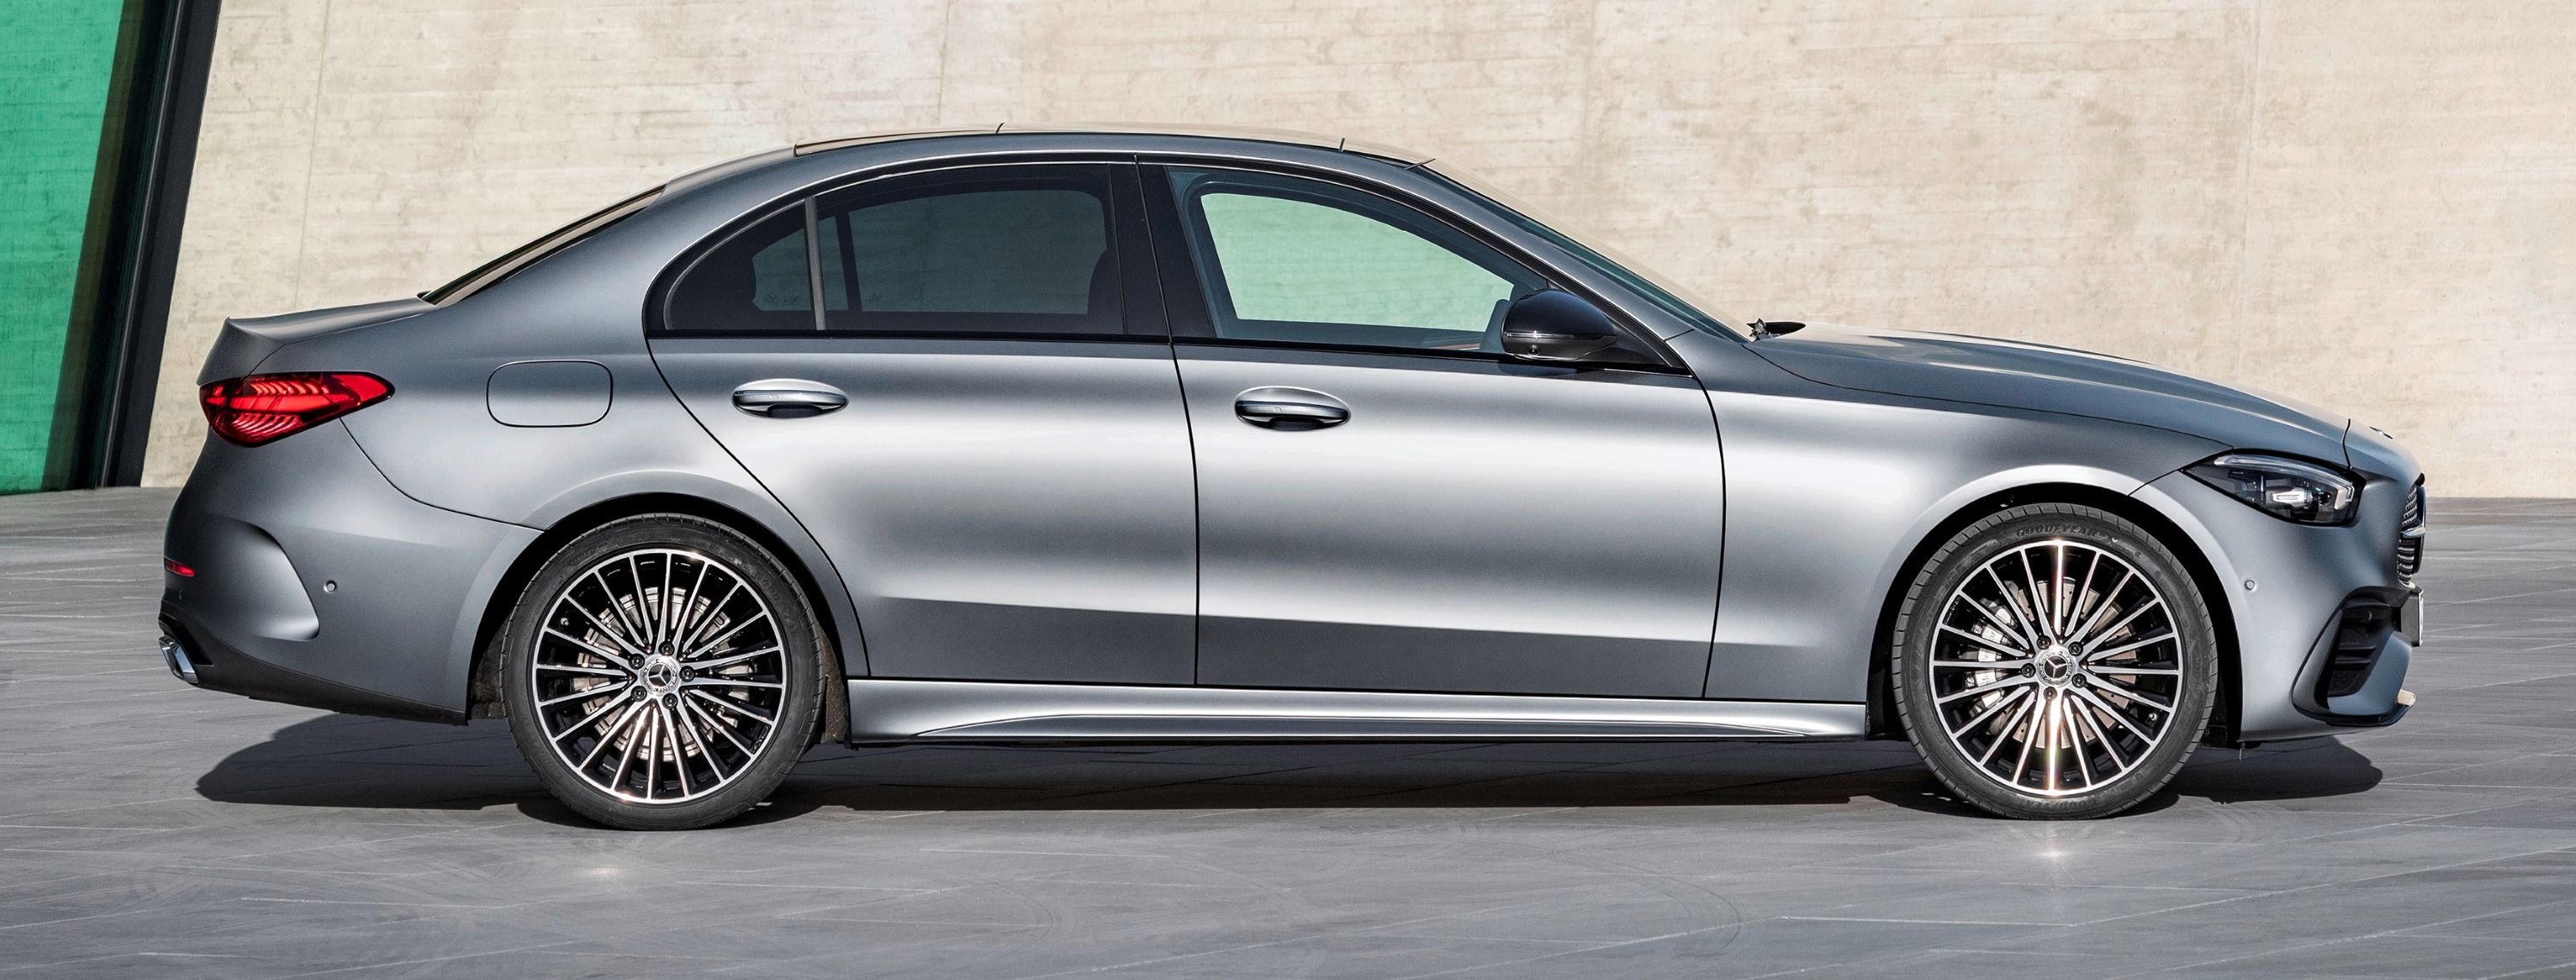 Nowy Mercedes klasy C ceny, wyposażenie, dane techniczne